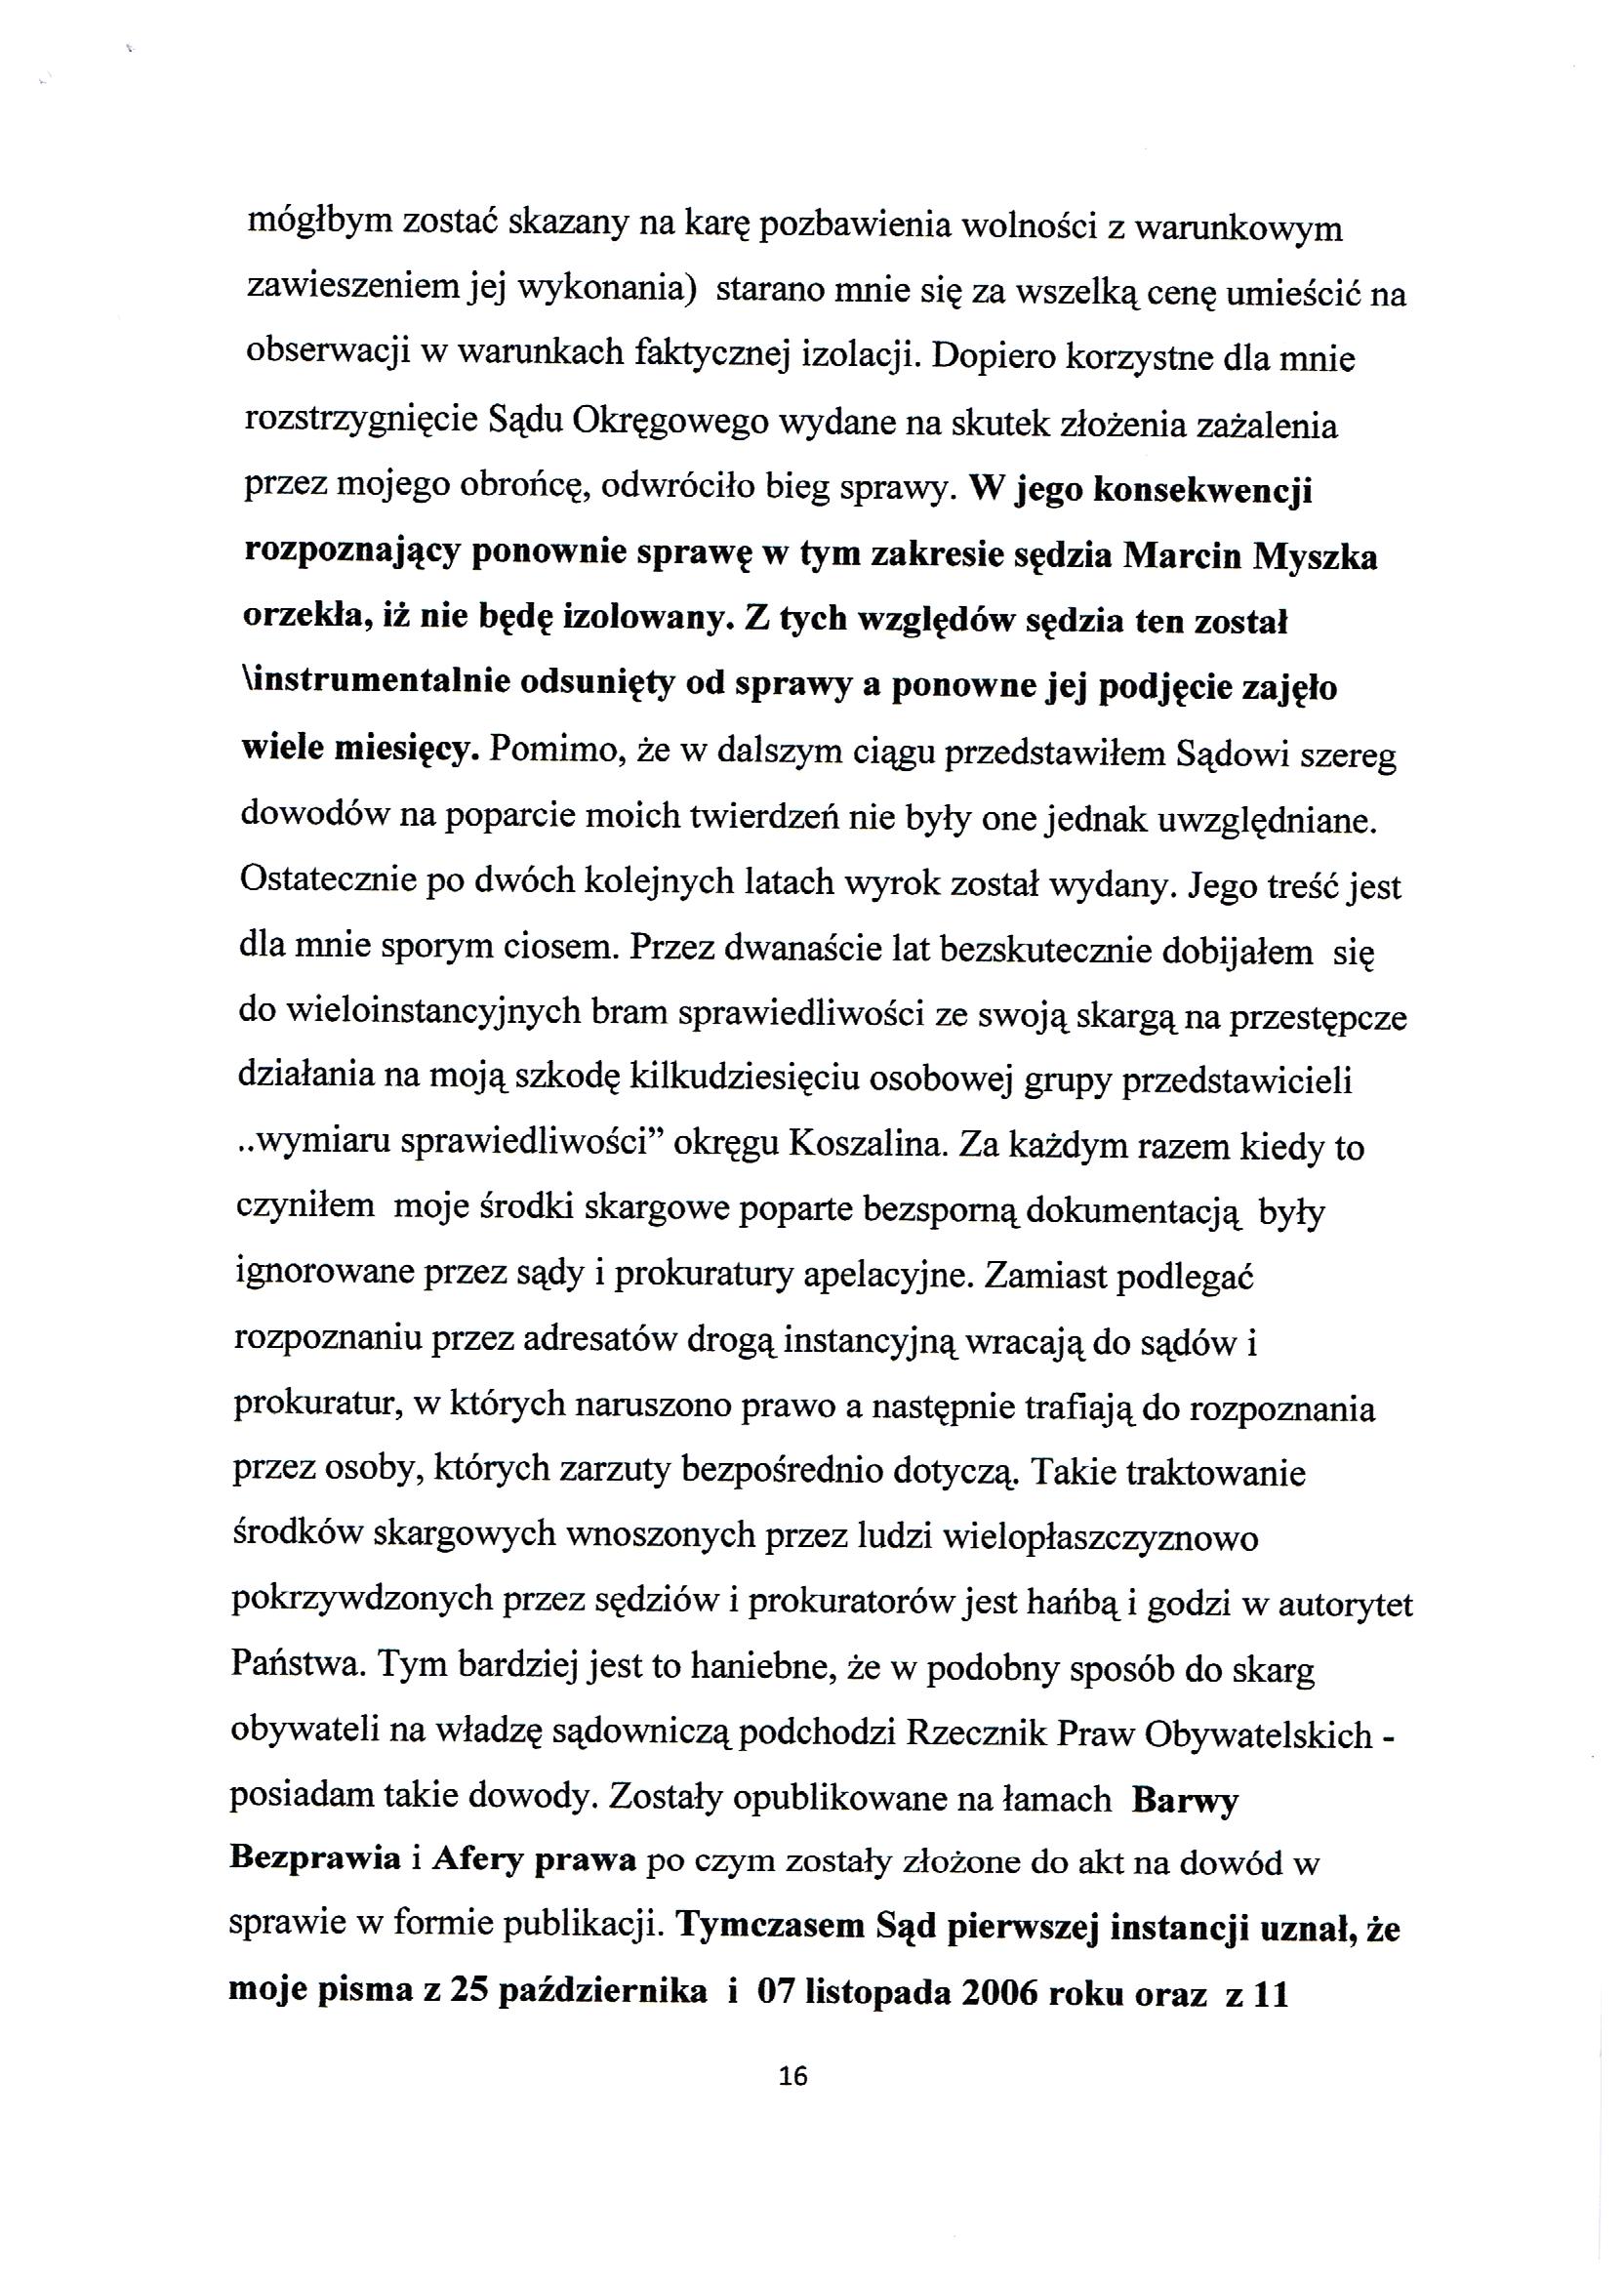 Apelacja Krzyształowski skan 016